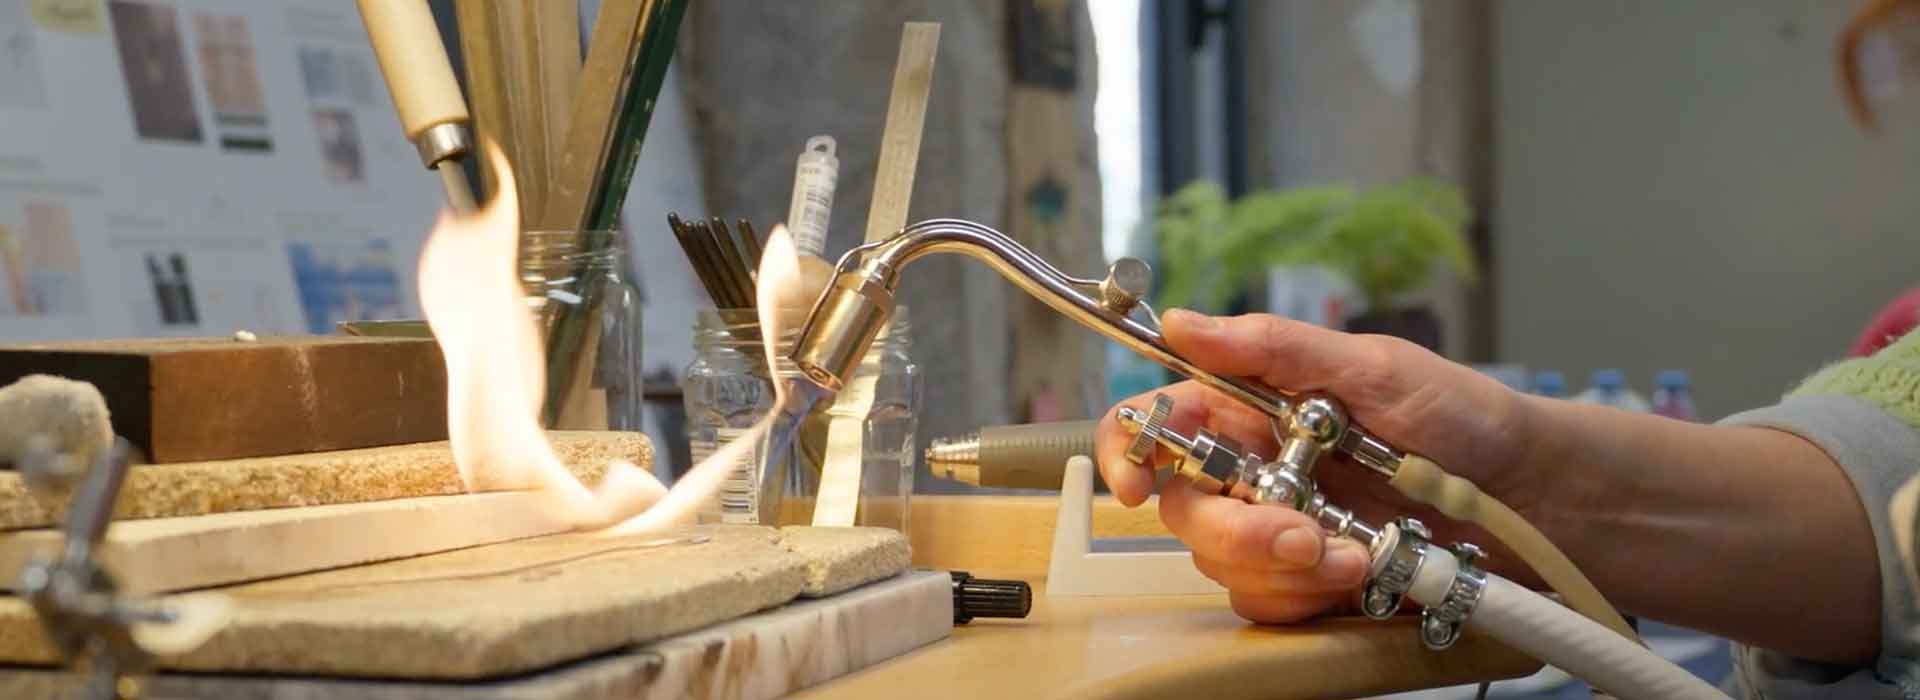 Atelier sur mesure sculptez votre bijou unique